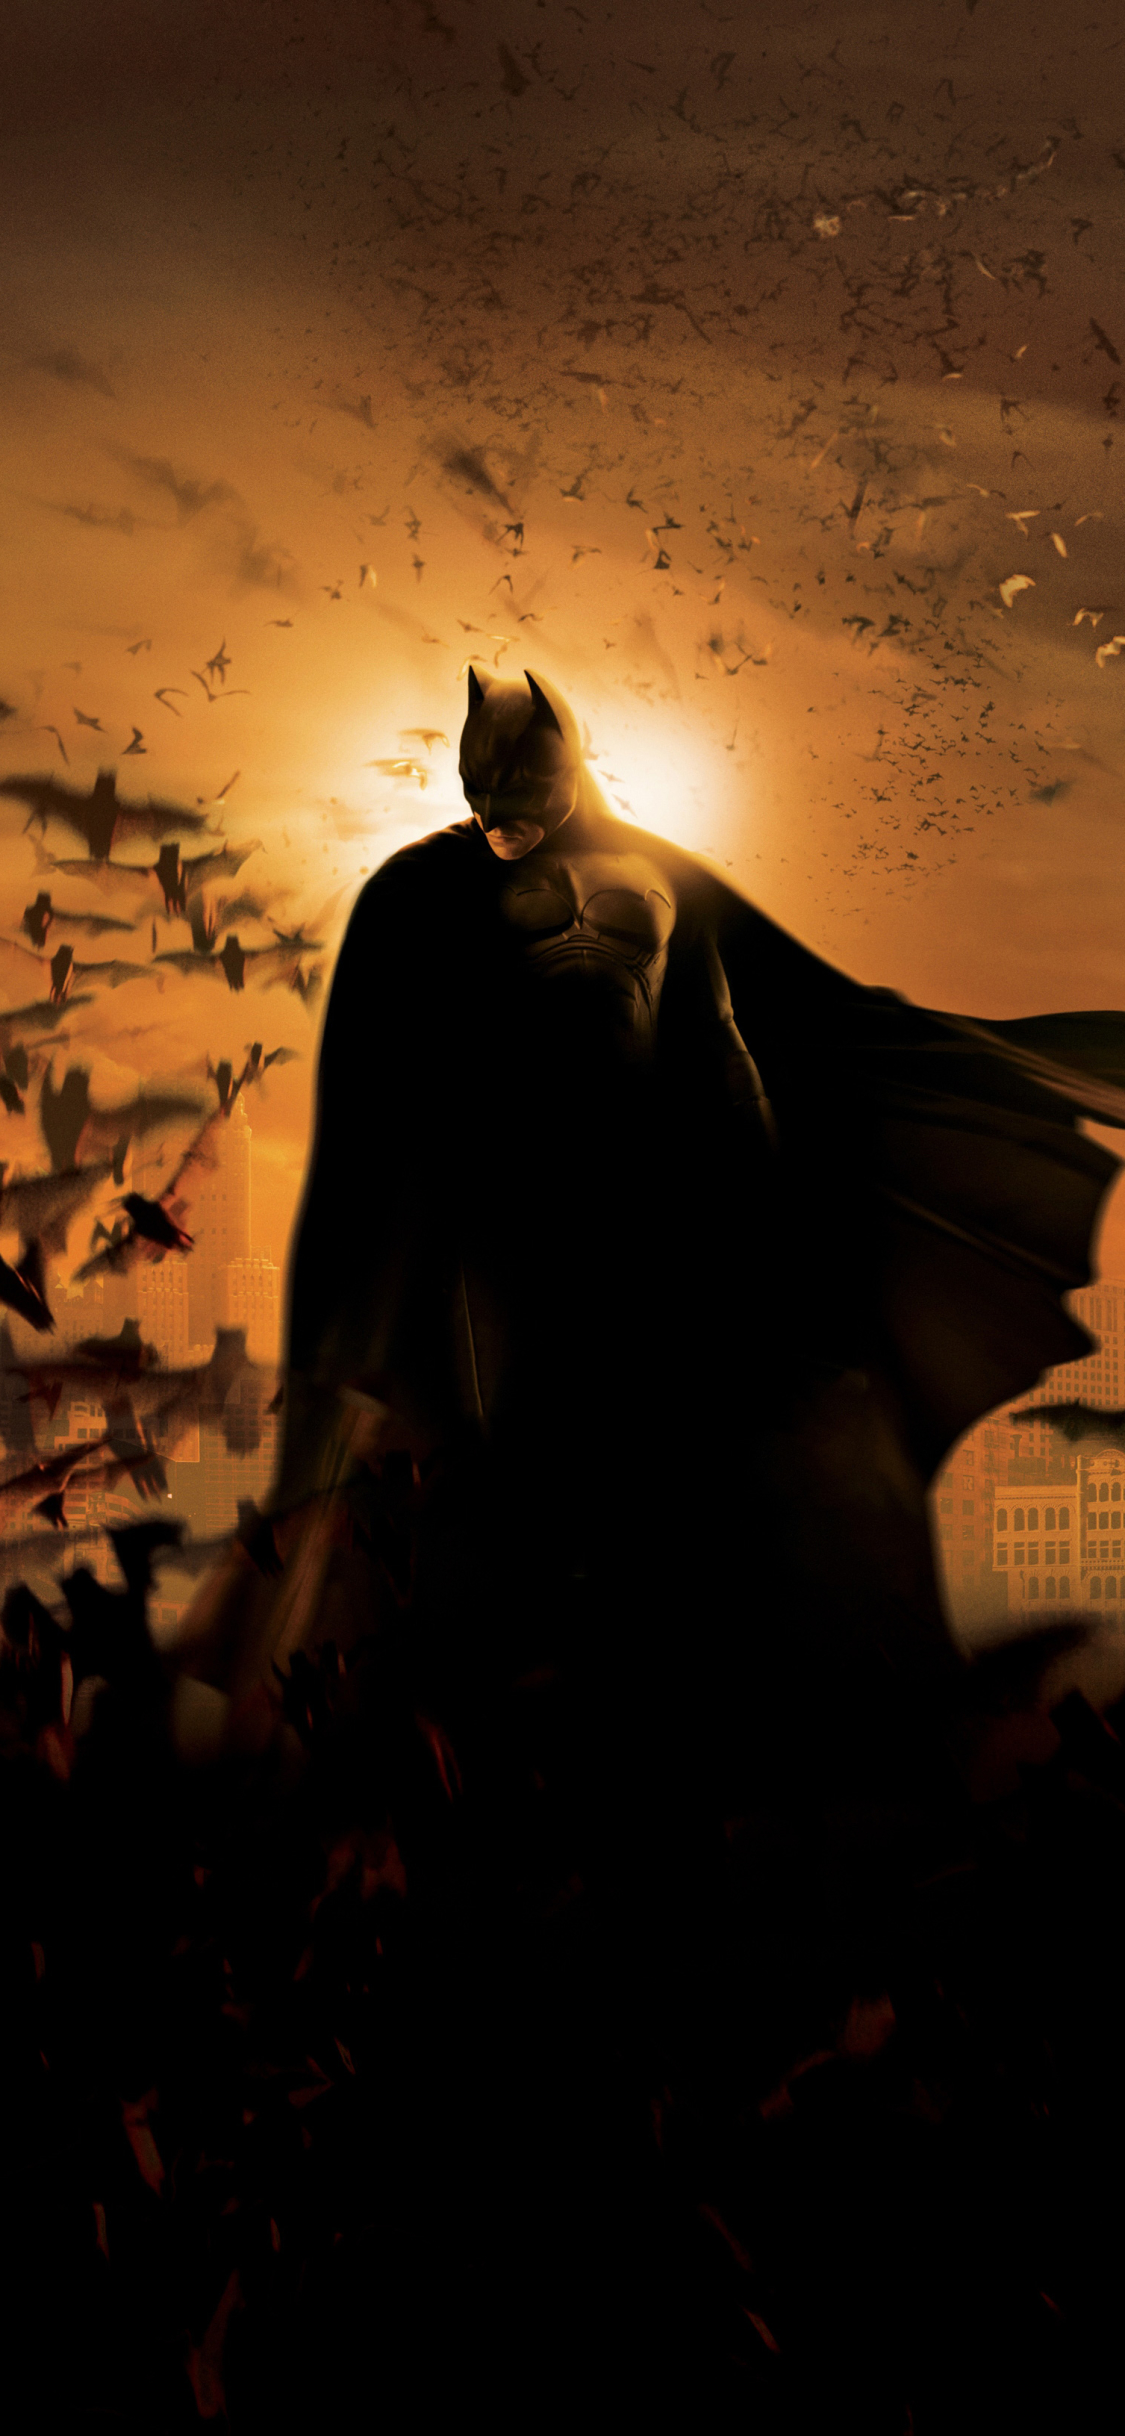 superhero, batman begins, batman, movie, bruce wayne, bat, dc comics, night